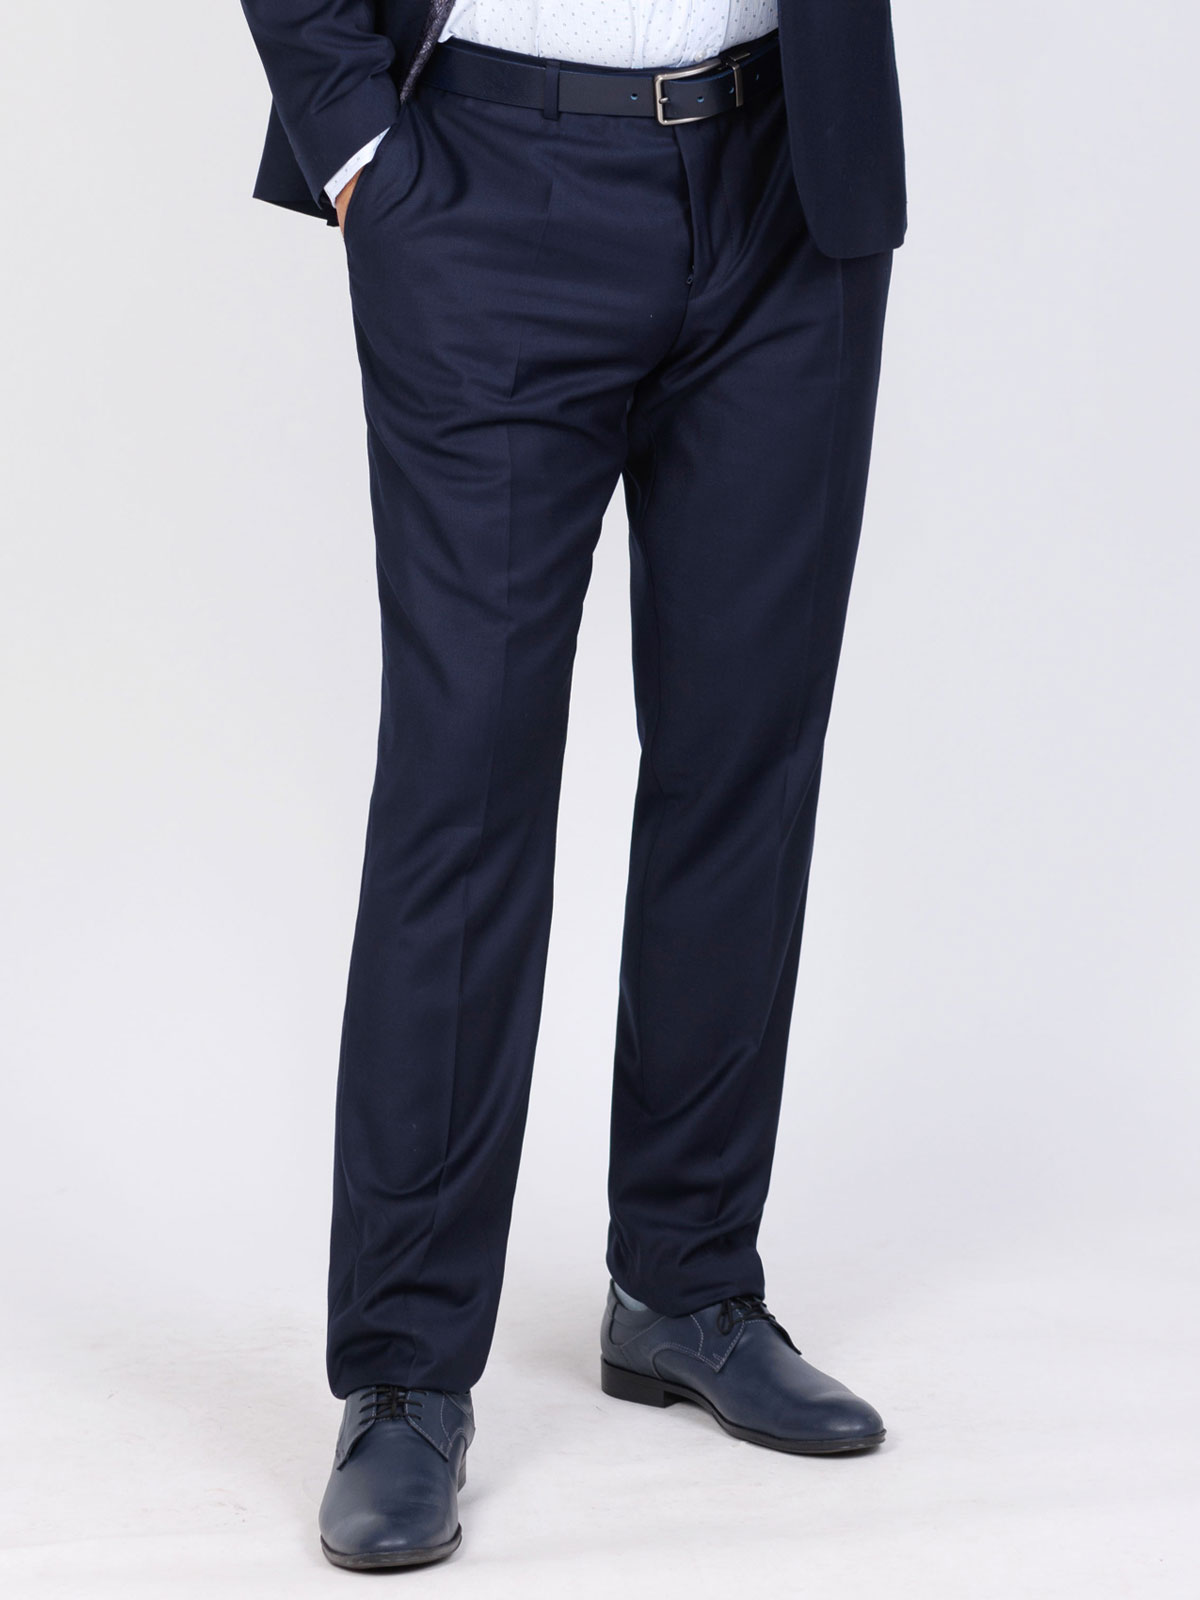 Κομψό παντελόνι σε μπλε χρώμα max - 63339 € 62.99 img2